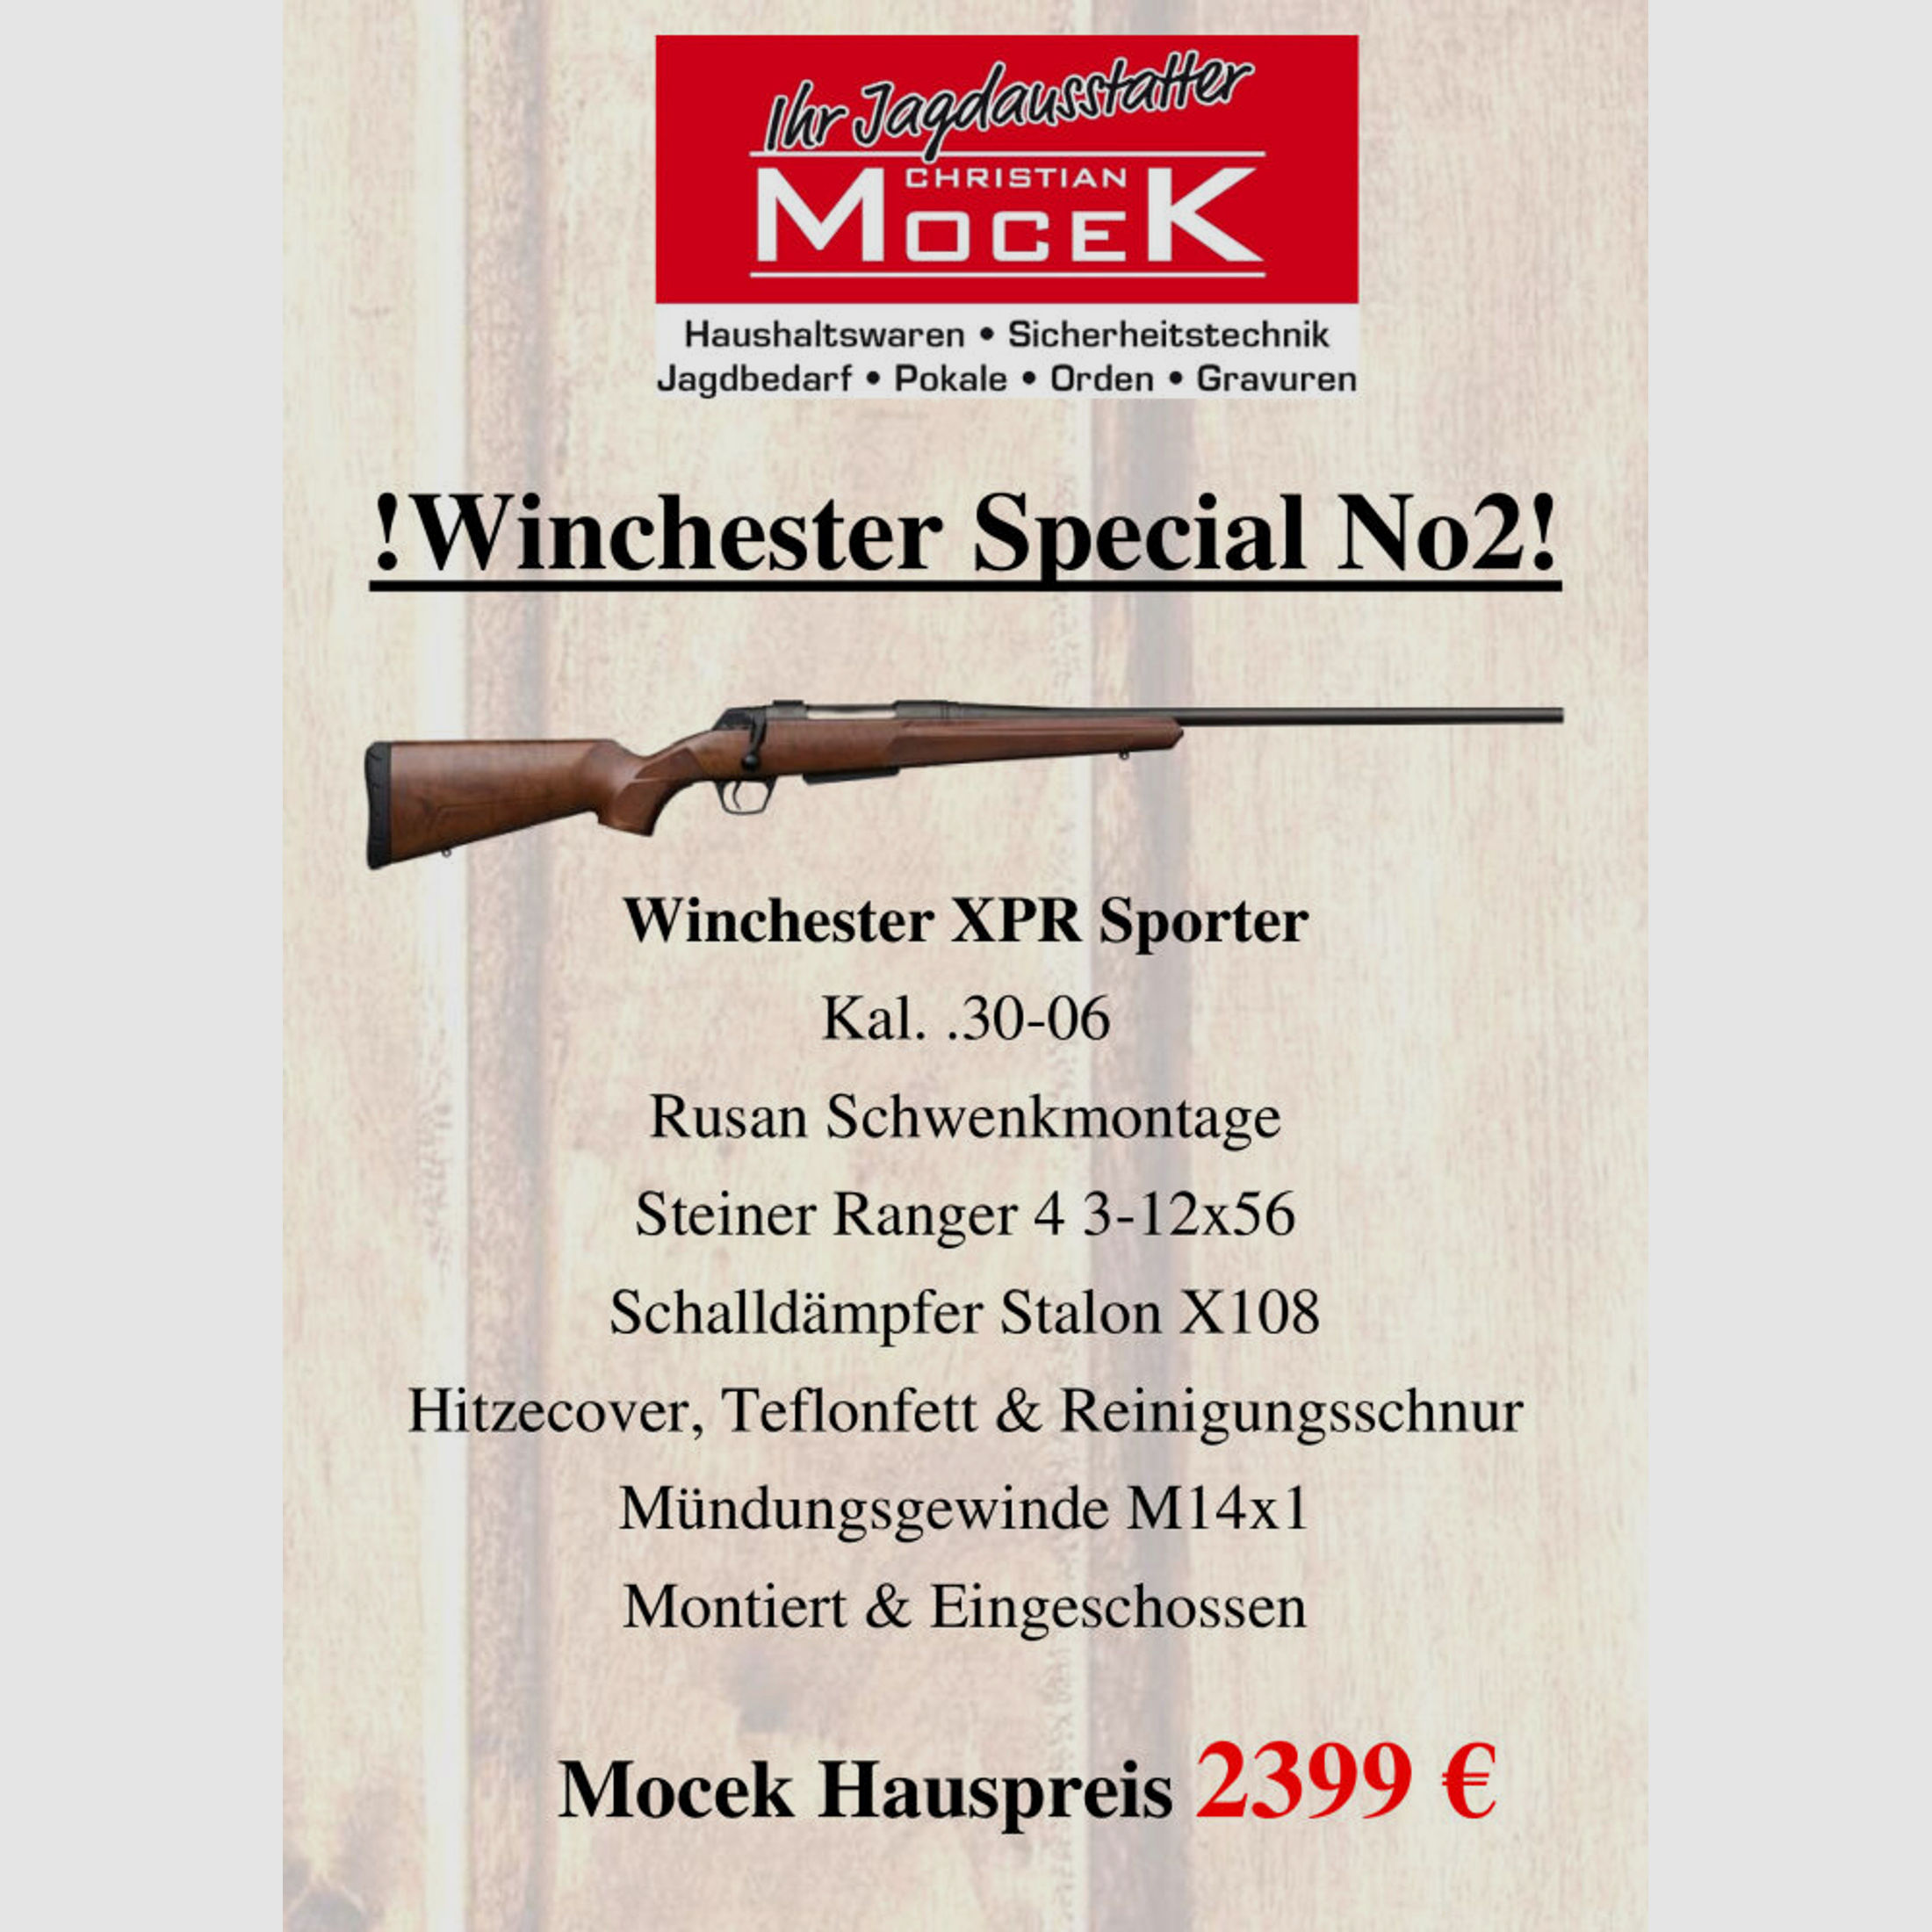 Winchester	 XPR Sporter, mit Steiner Ranger 4 3-12x56